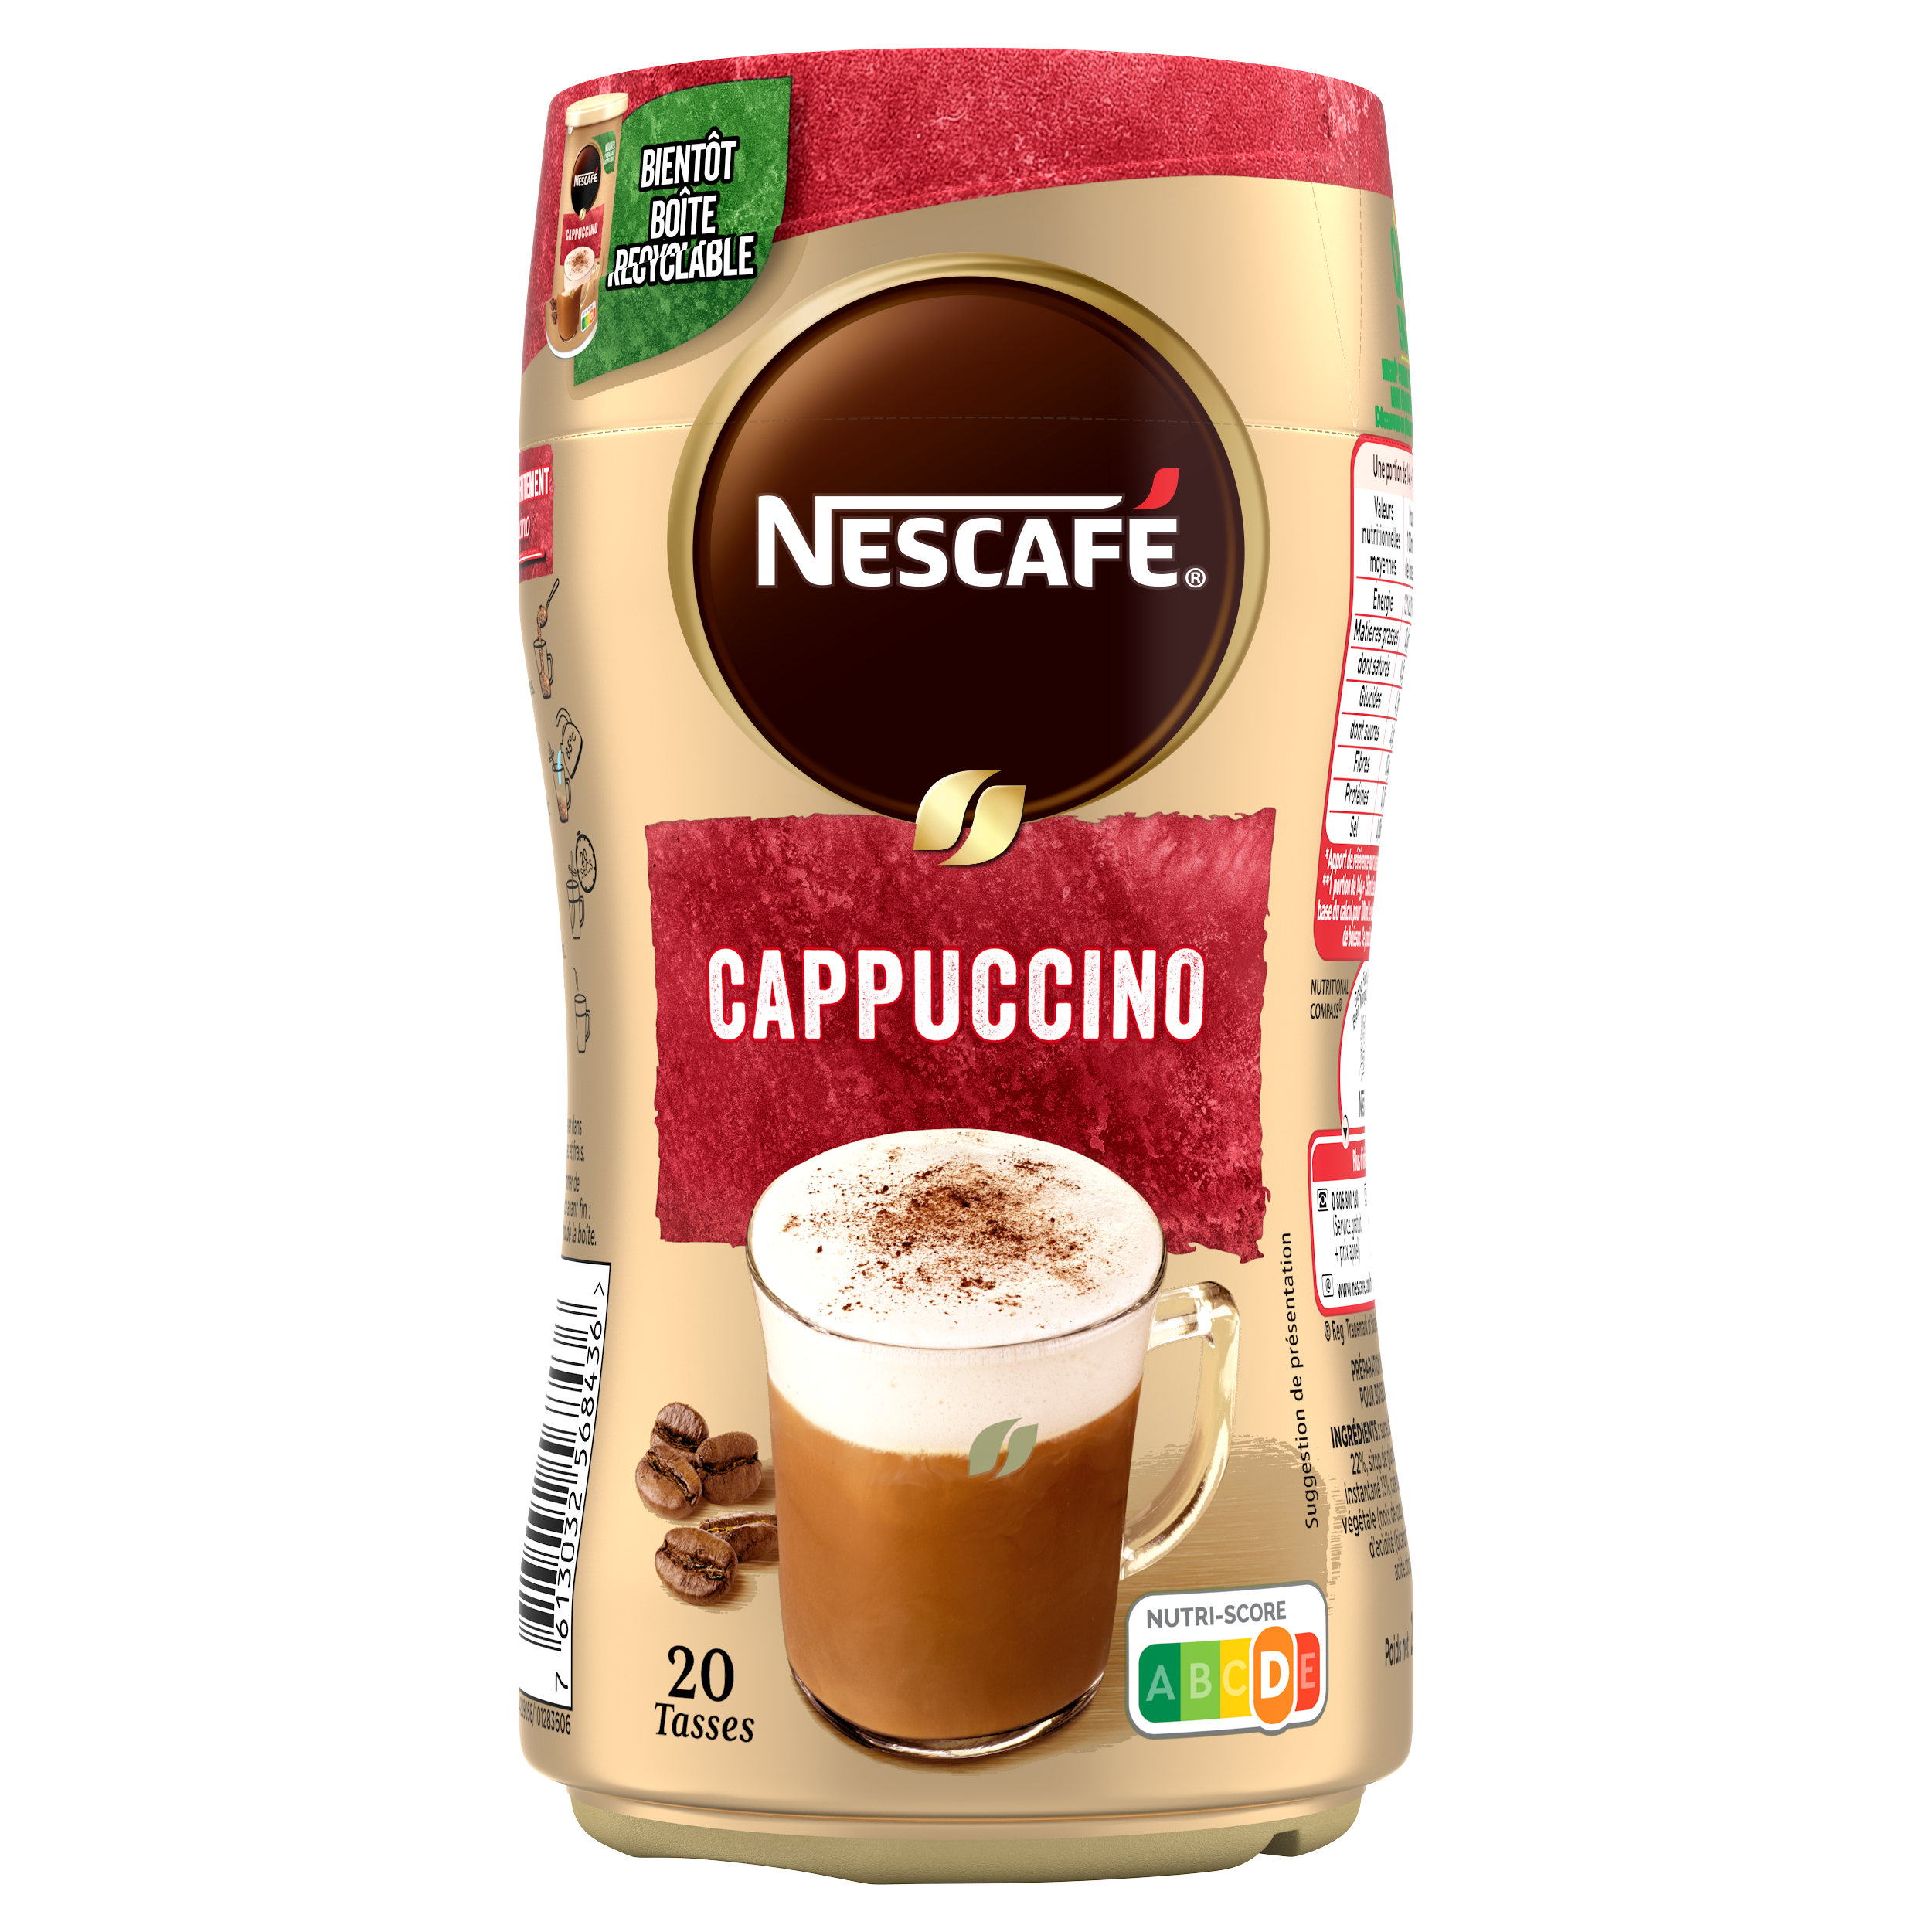 NESCAFE Cappuccino, café soluble, Boîte de 280g